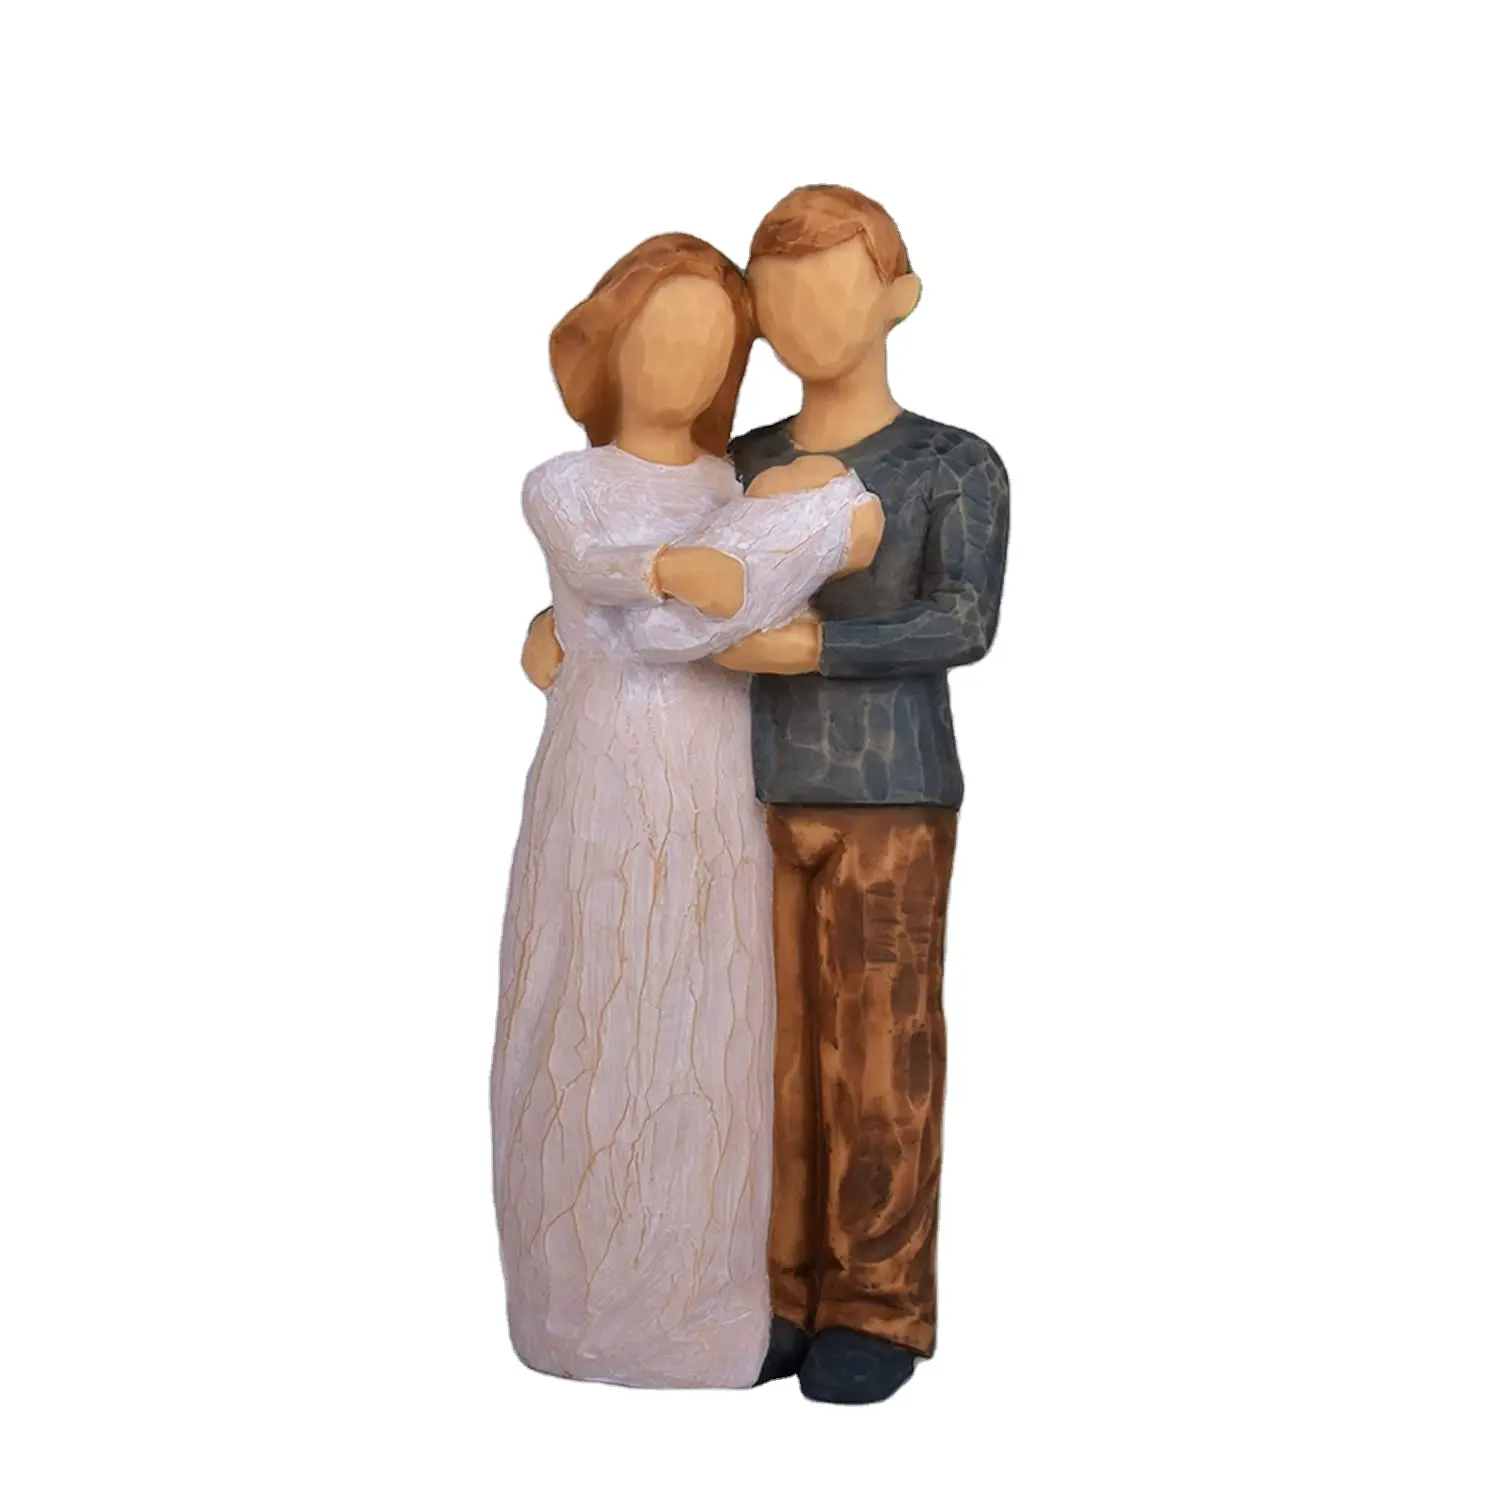 रोमांटिकफैमिली एक साथ चित्र मीठा प्यार एक साथ युगल और बच्चे संग्रहणीय मूर्तियां परिवार की मूर्ति और मूर्तिकला से प्यार करती हैं